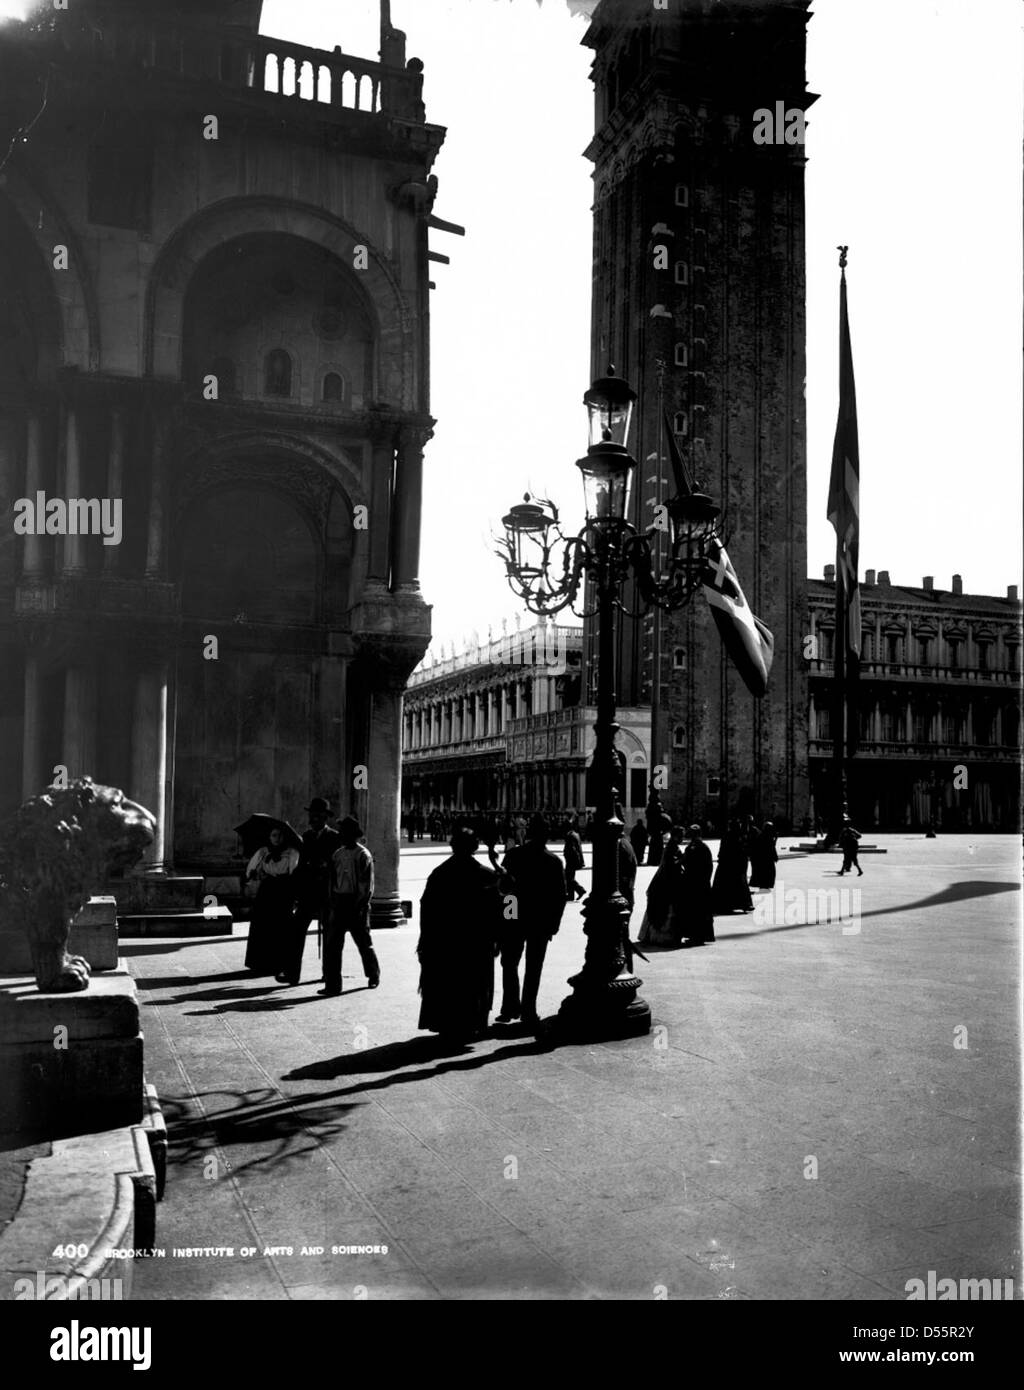 St. Mark's, Venice, Italy, 1895. Stock Photo